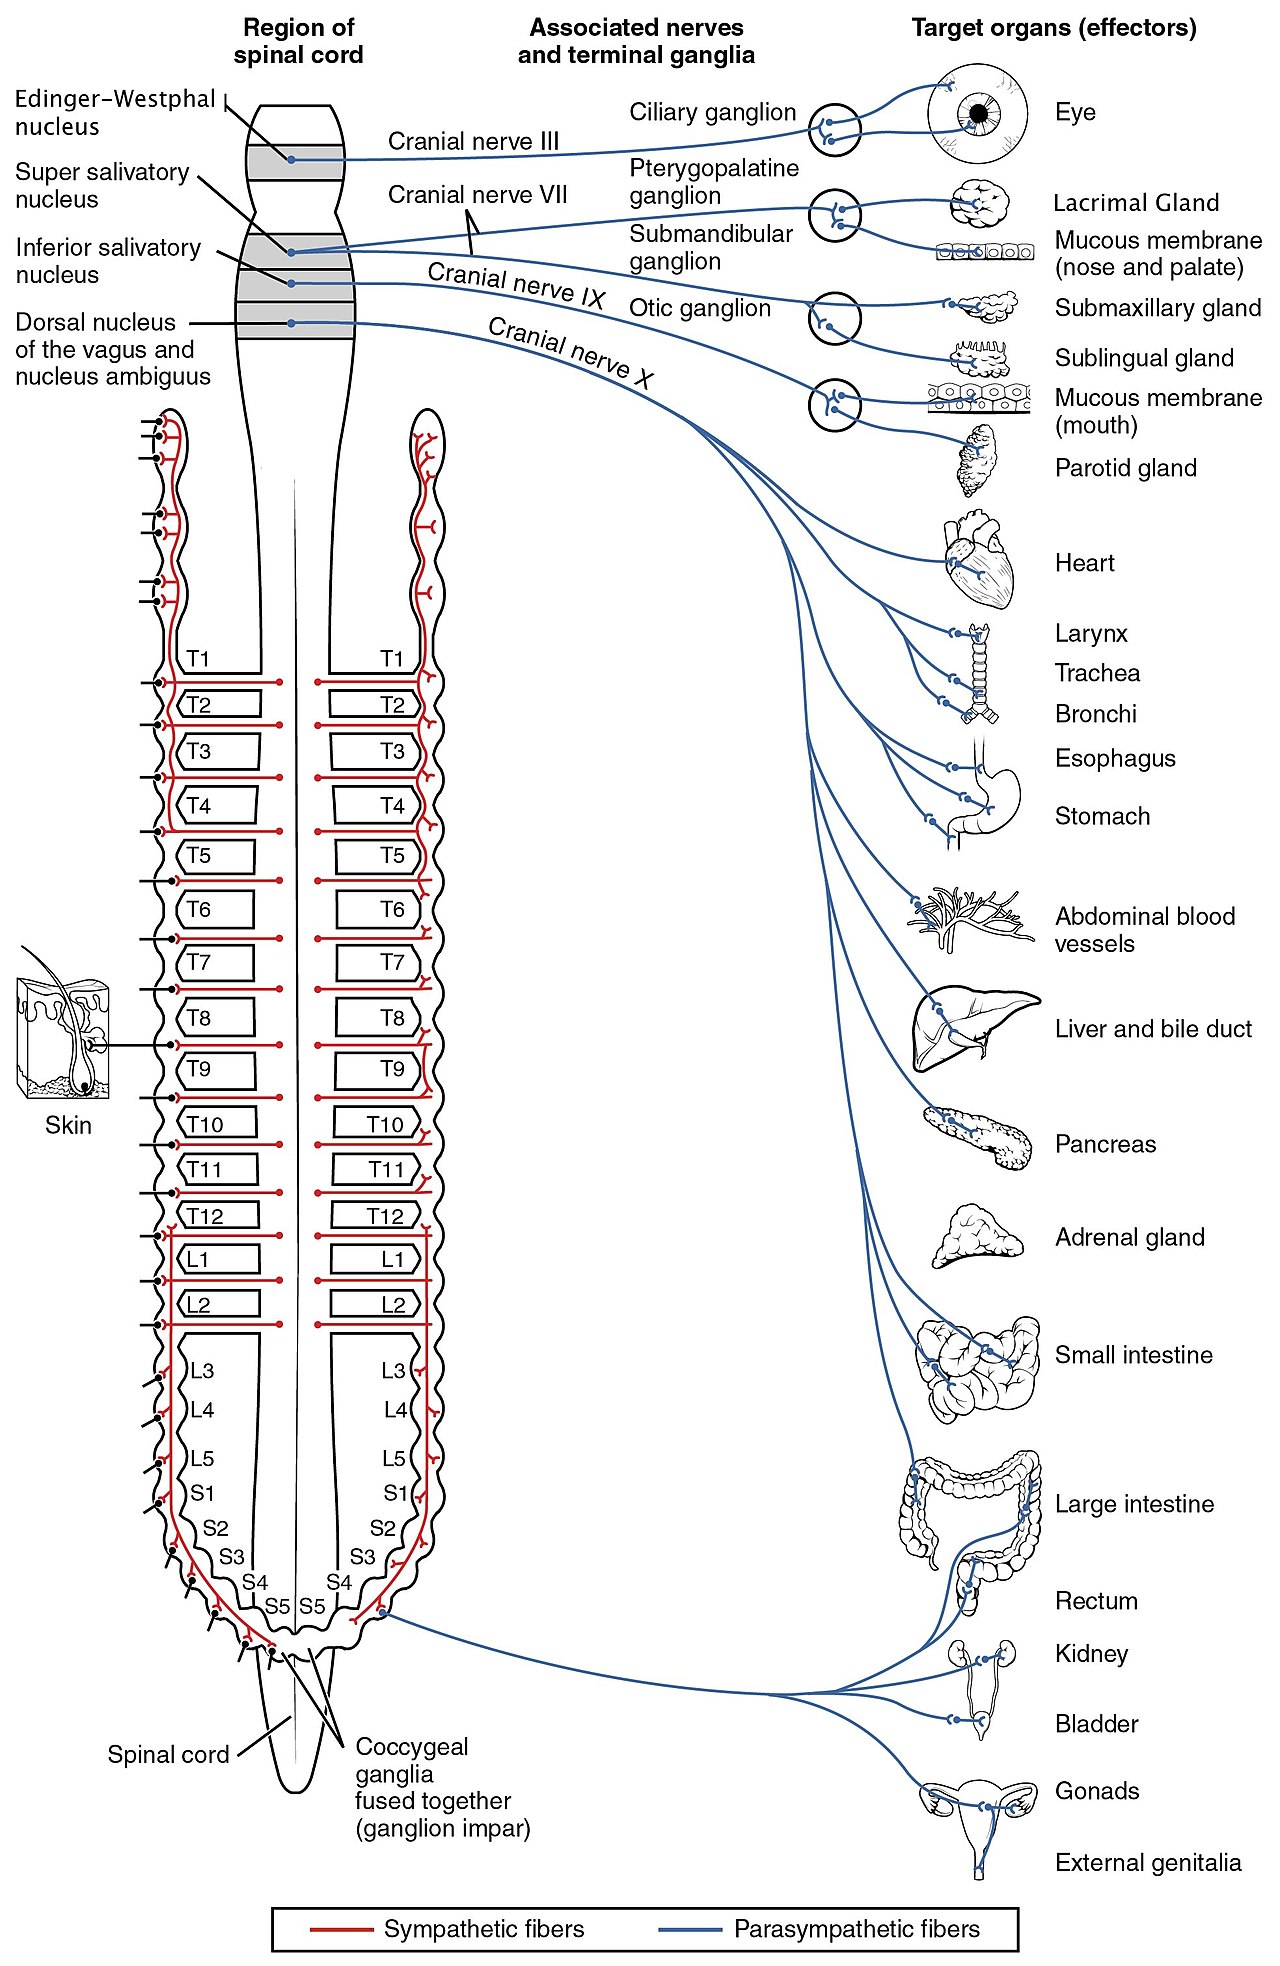 الجهاز العصبي هو المسئول عن التواصل بين أجزاء الجسم